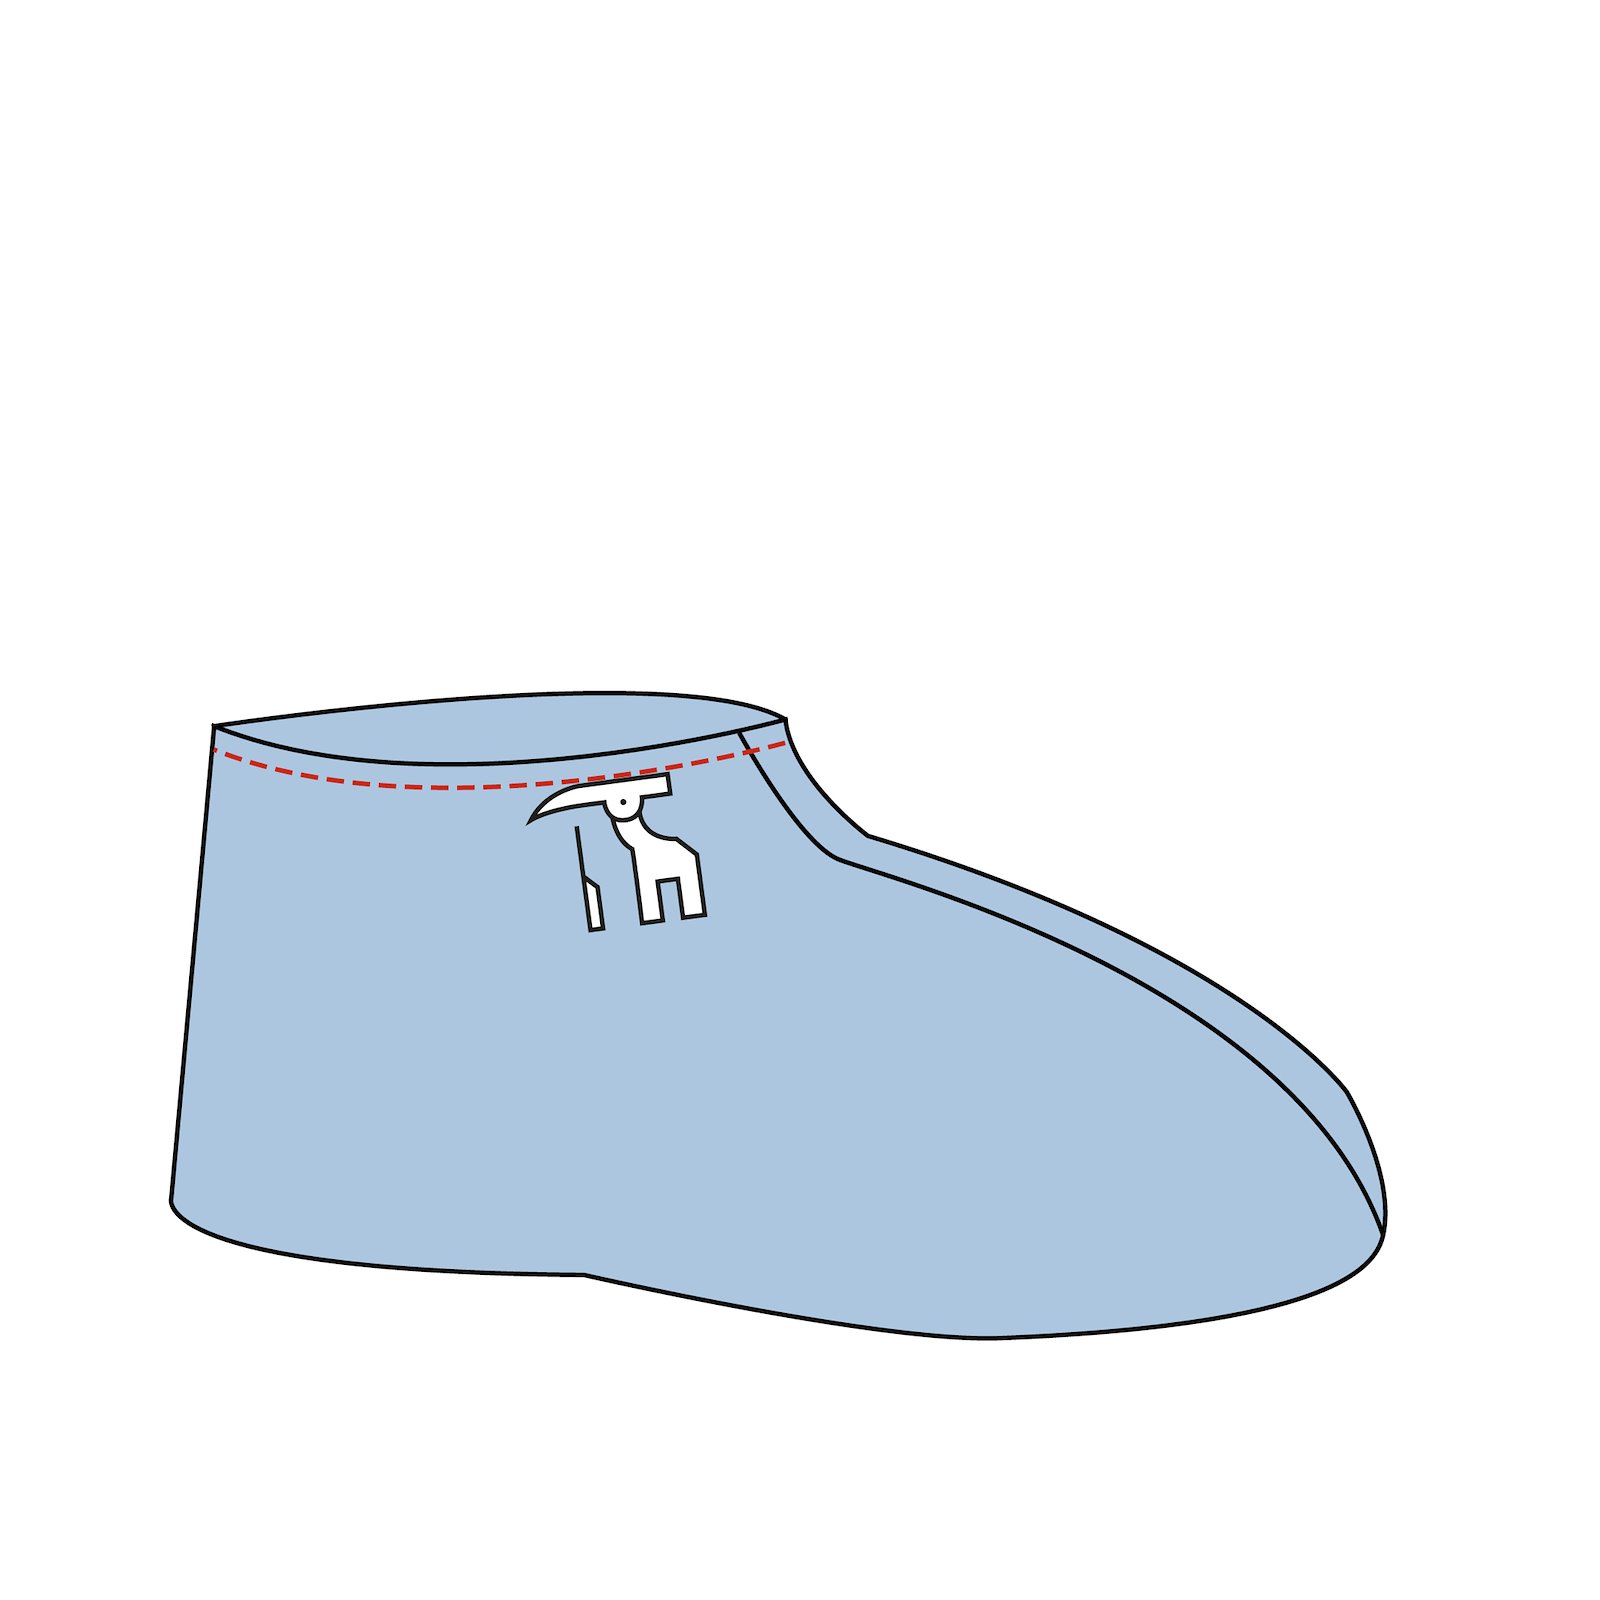 Sewing pattern: Adult Slippers DIY2315_step6.jpg